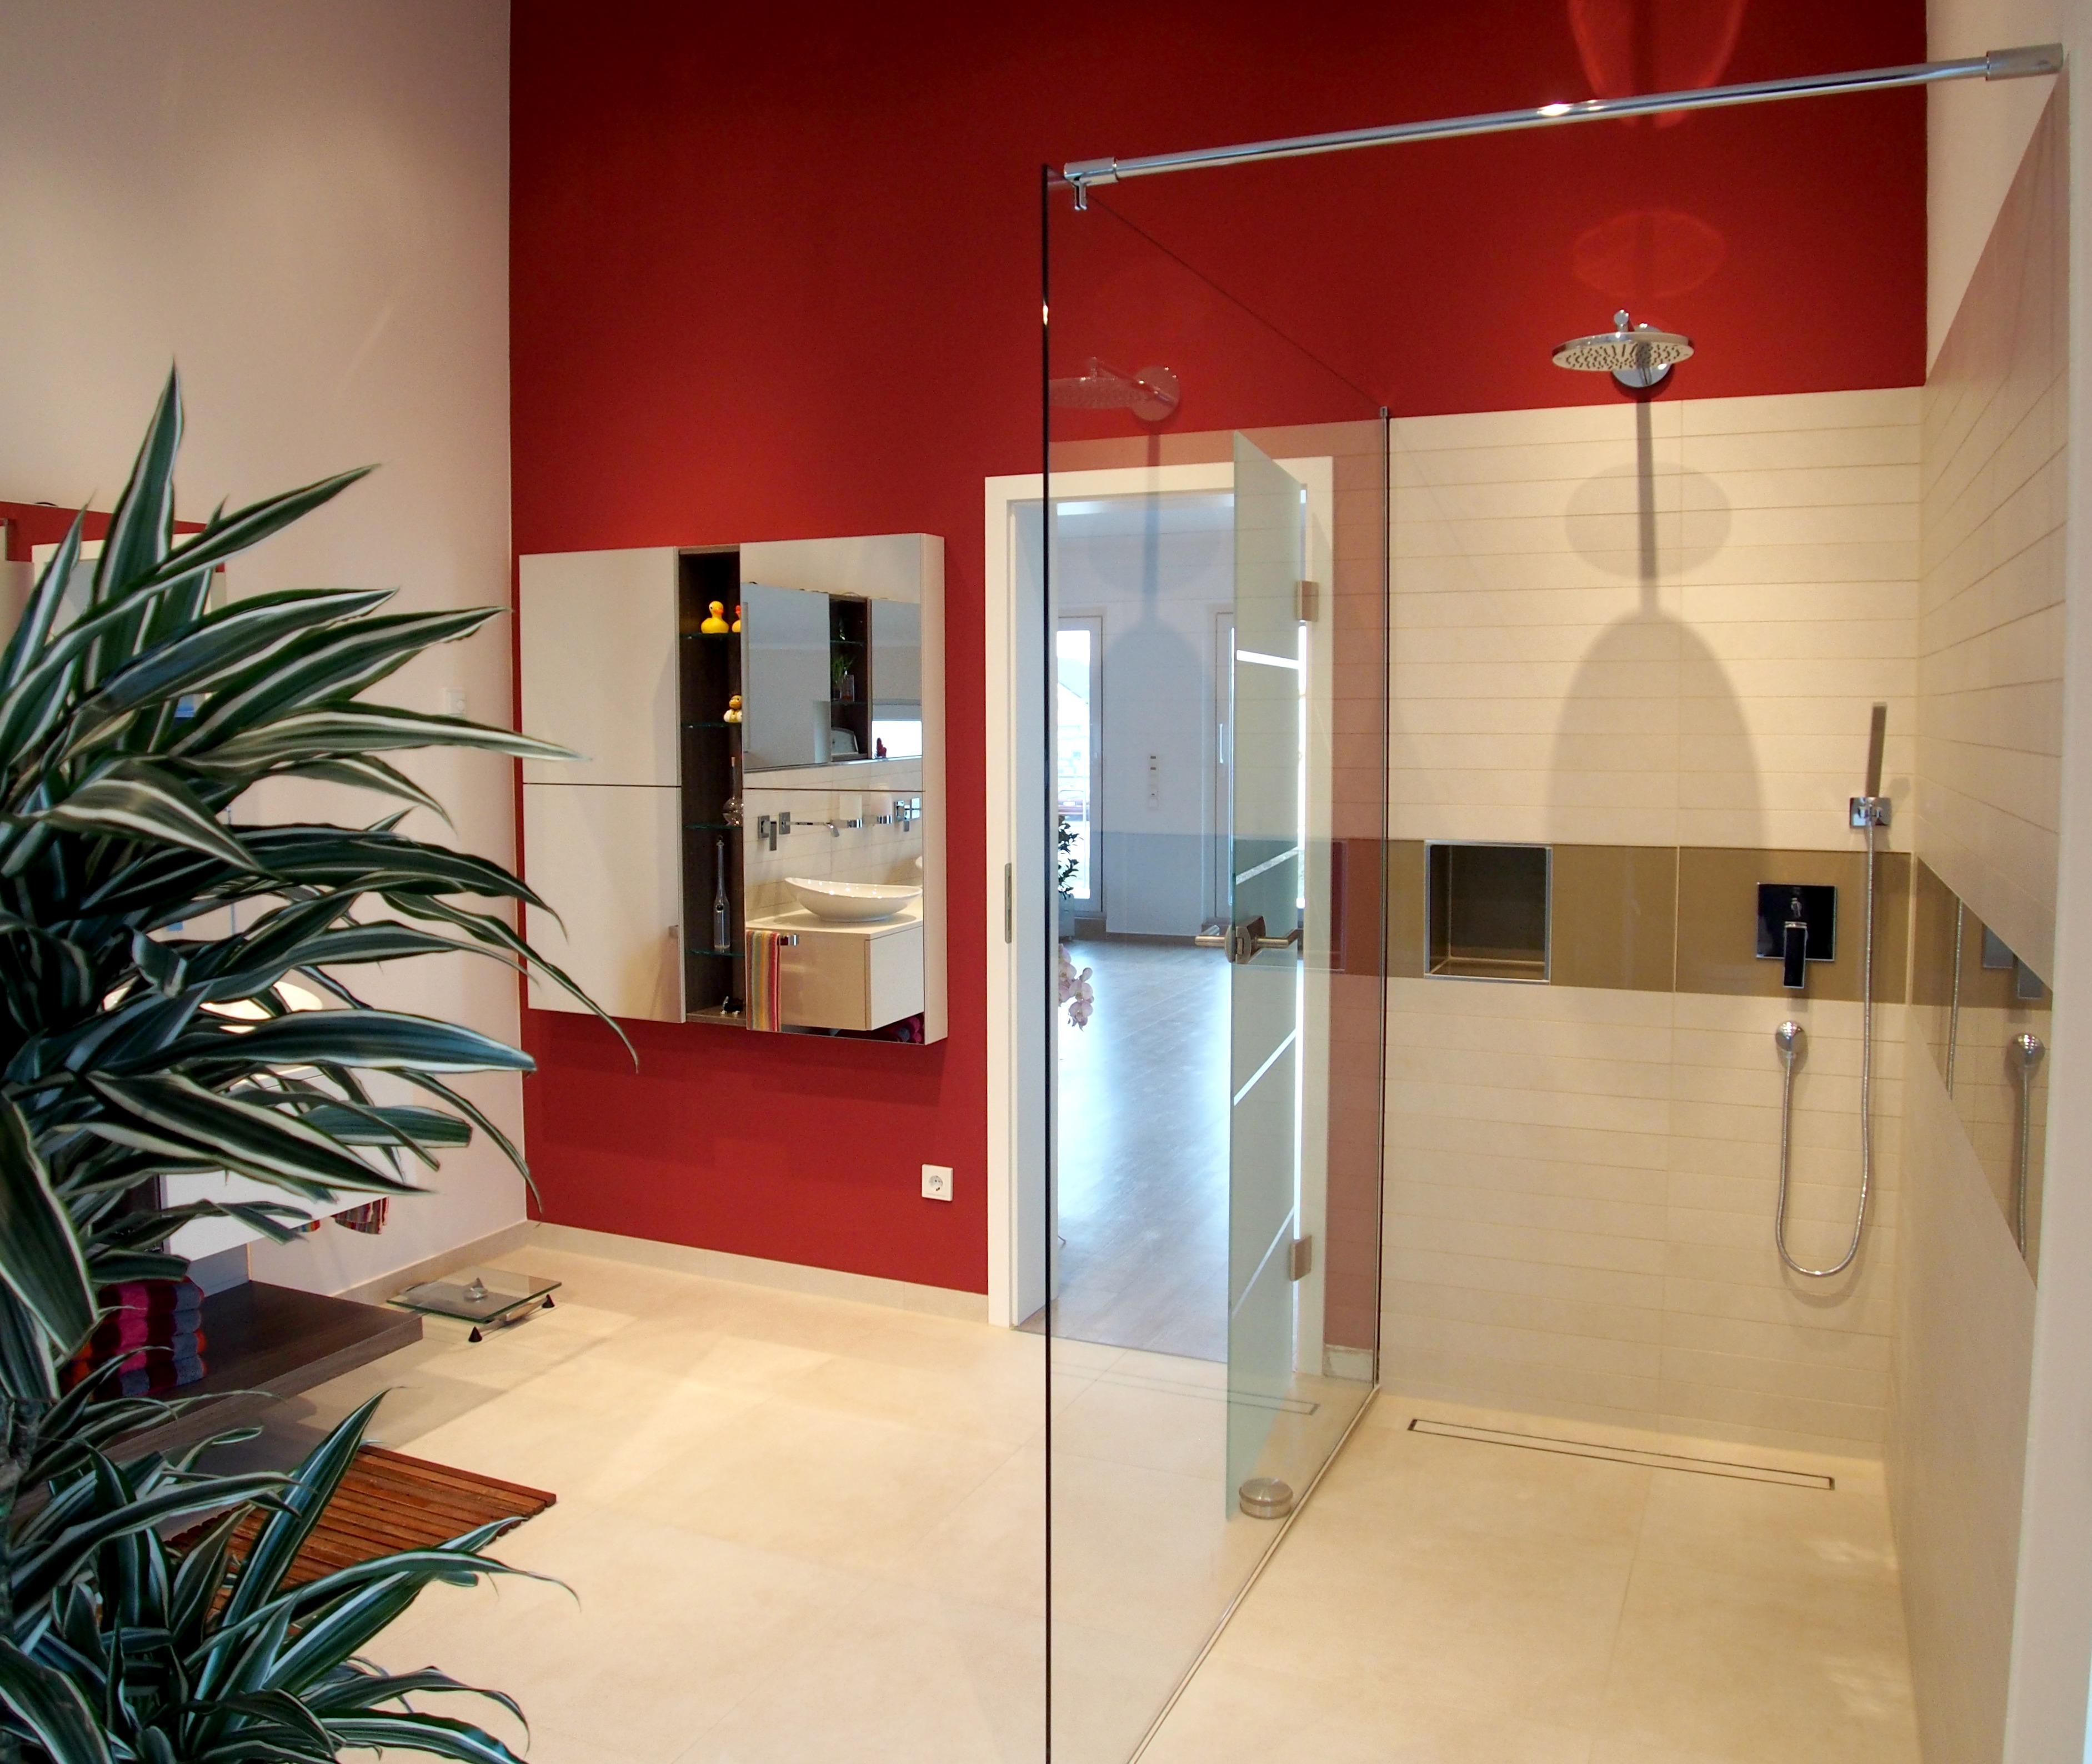 Badezimmer 1 in Stadecken #badezimmer #wandgestaltung #badidee ©Yvette Sillo